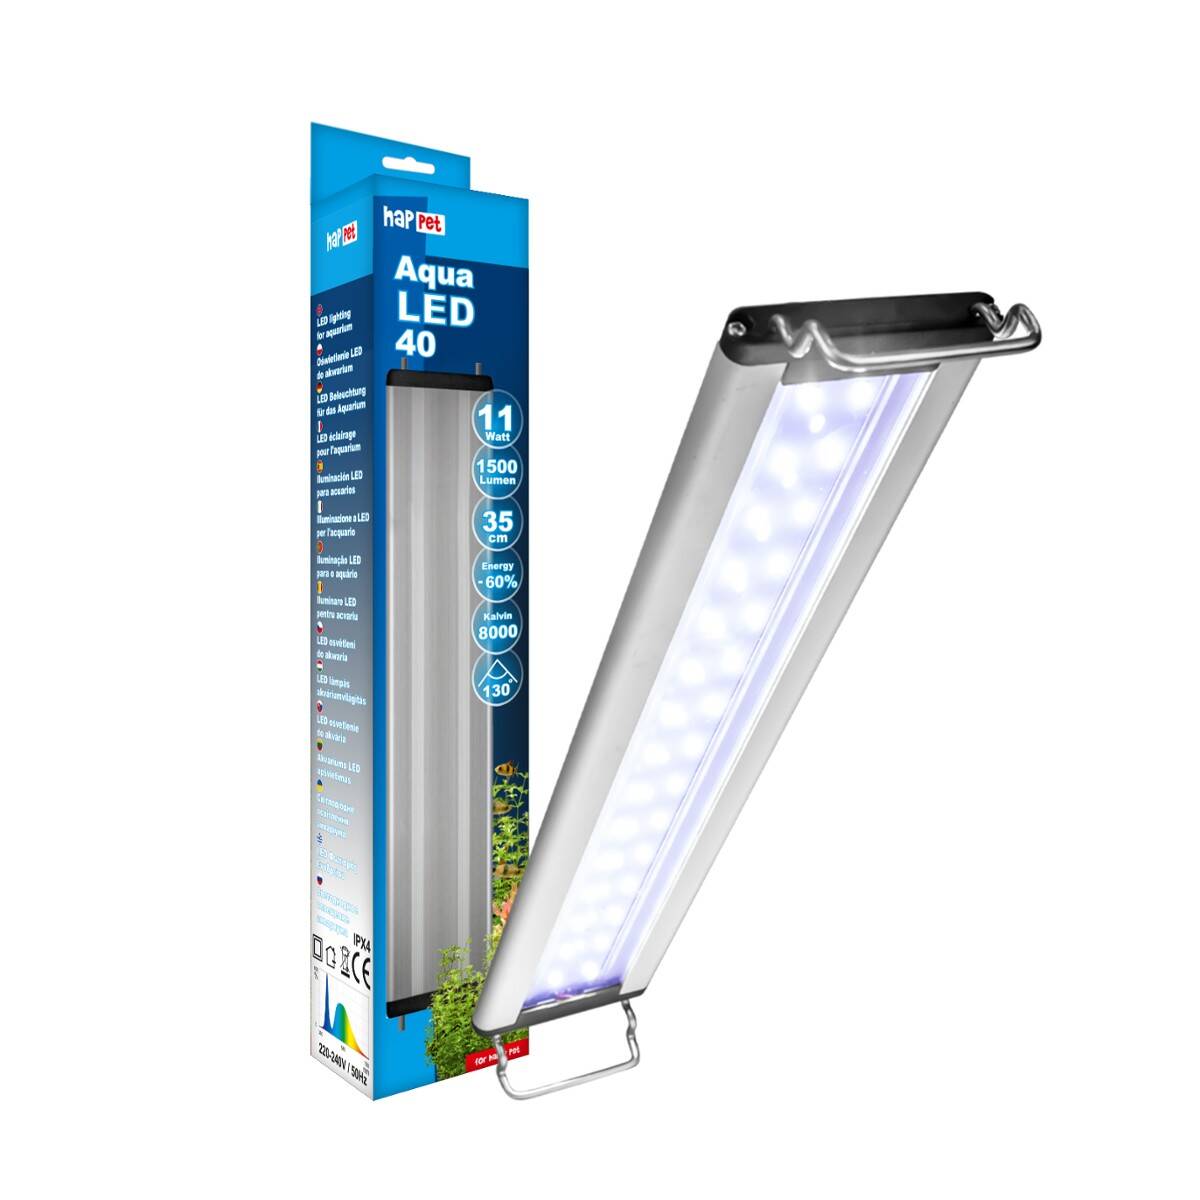 Aqua LED-Lampe 11W Happet LB15 11W/36cm (S-LB15JW)